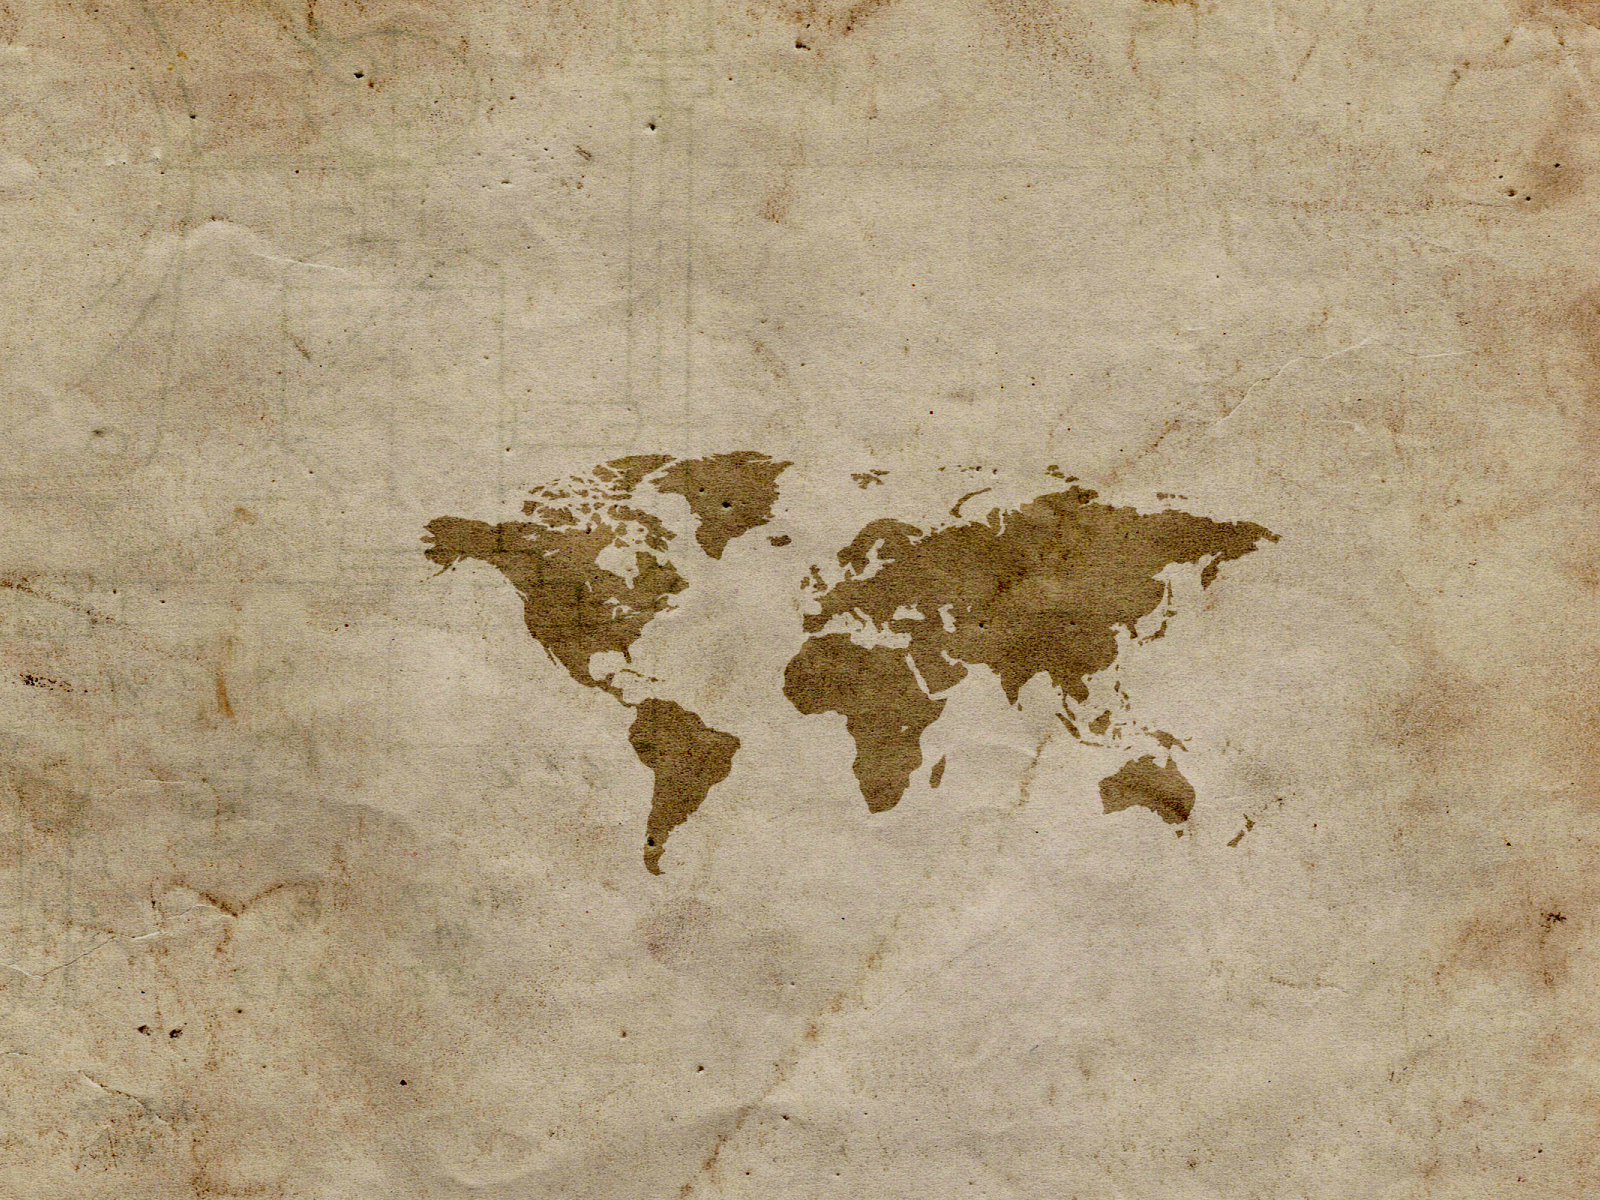 Маленькая карта мира